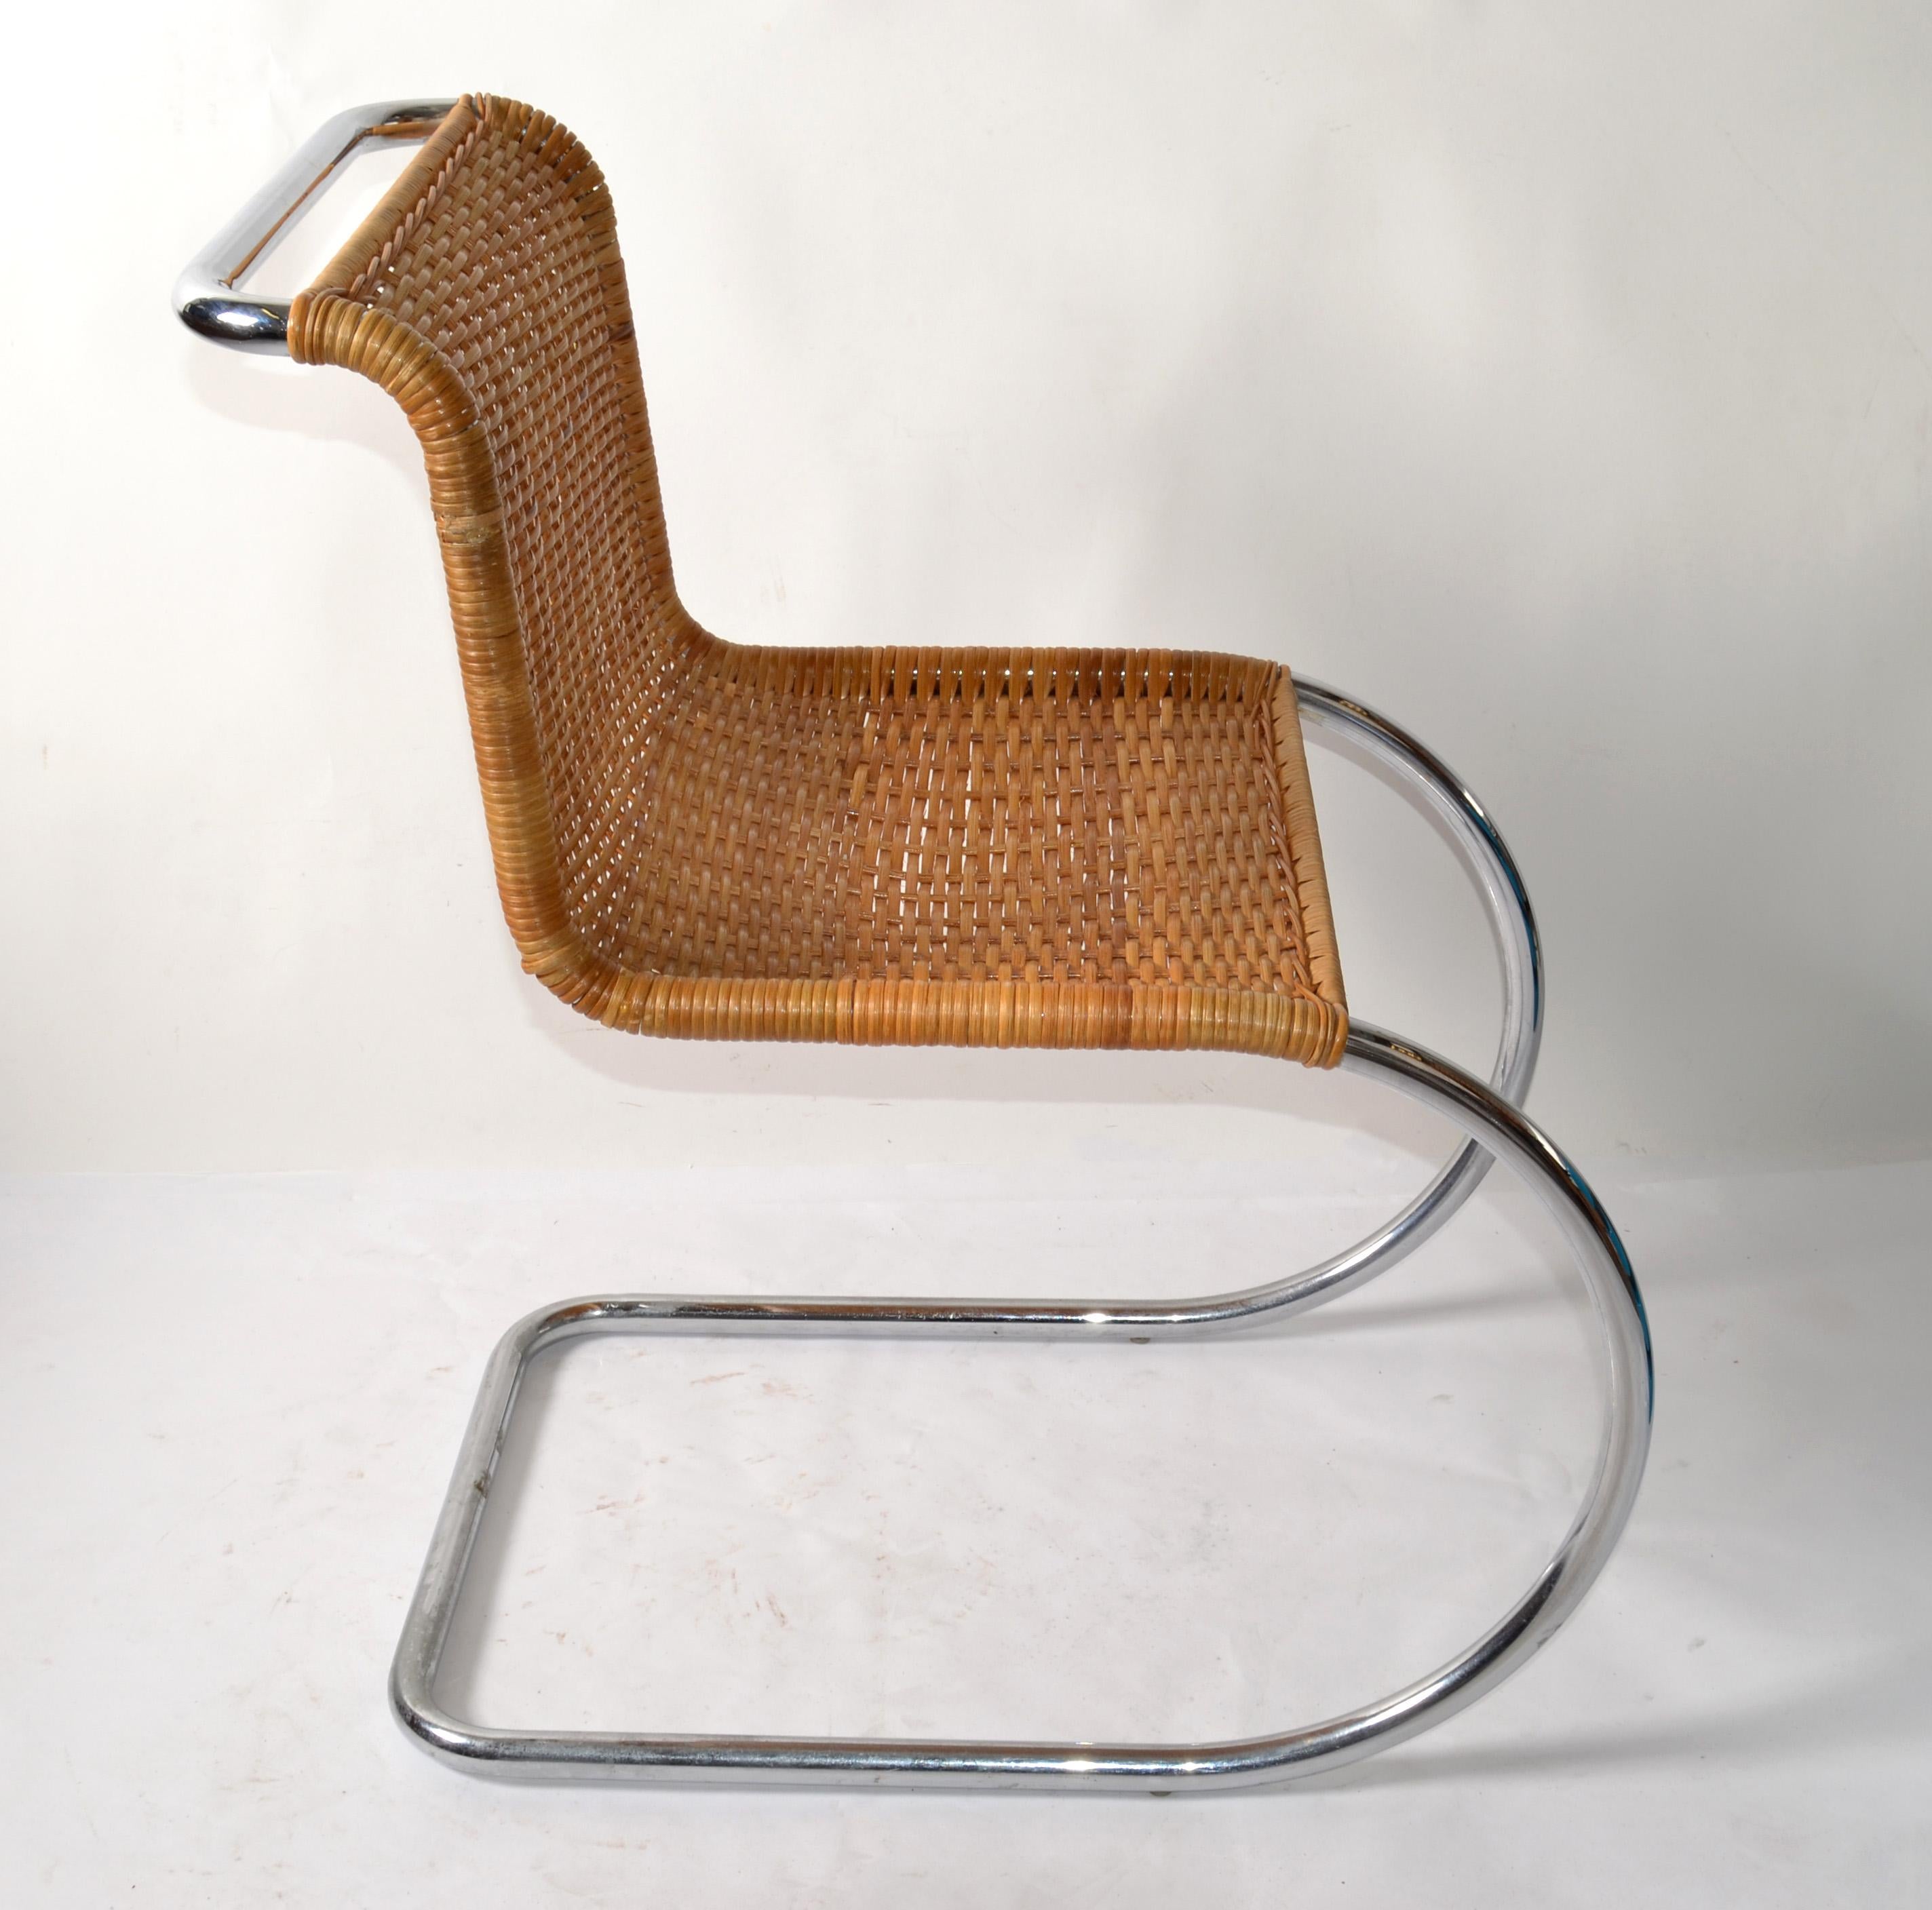 Chaise d'appoint sans bras Mr Chair attribuée à Ludwig Mies van der Rohe en finition chromée avec l'assise en rotin originale tissée à la main attribuée à Knoll.
La Collection S représente quelques-uns des premiers meubles en acier conçus par Mies